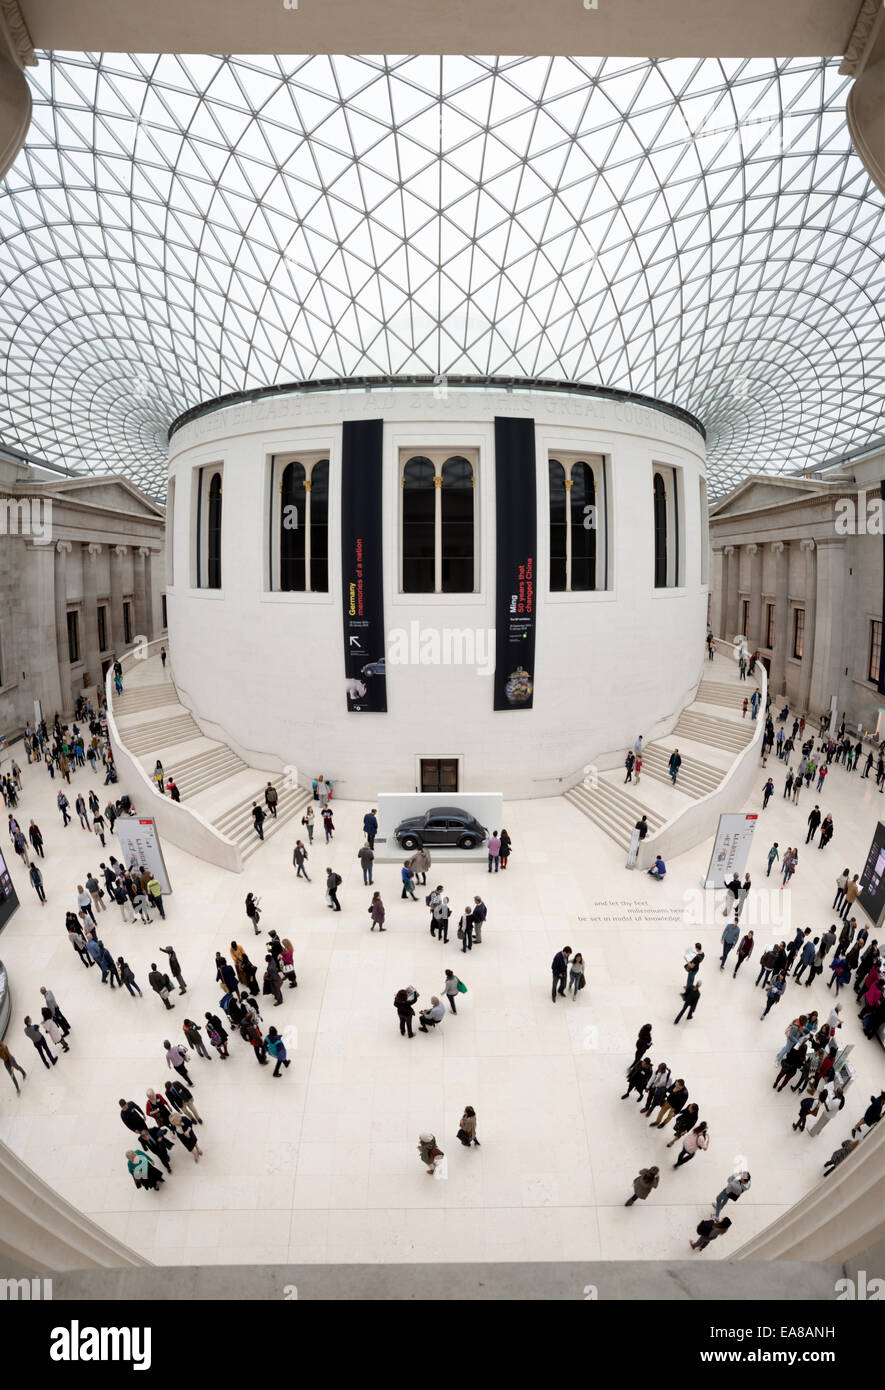 LONDON, GROSSBRITANNIEN - Die markanten Great Court des British Museum in London. Entworfen von Foster & Partners, seine formale Name ist die Queen Elizabeth II Great Court. Es konvertiert der Innenhof des Museums in den größten überdachten Platz in Europa. Es umfasst zwei Hektar, mit dem runden Lesesaal in der Mitte. Stockfoto